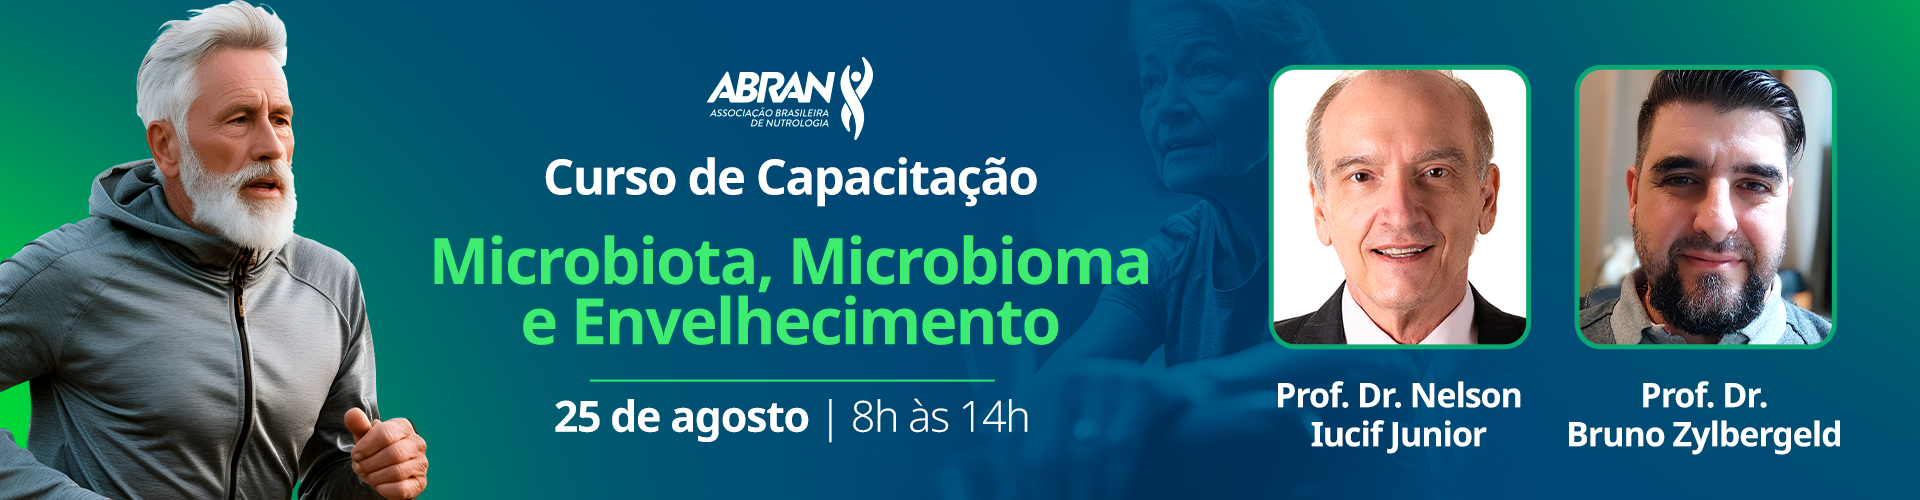 Curso de Capacitação: Microbiota, Microbioma e Envelhecimento